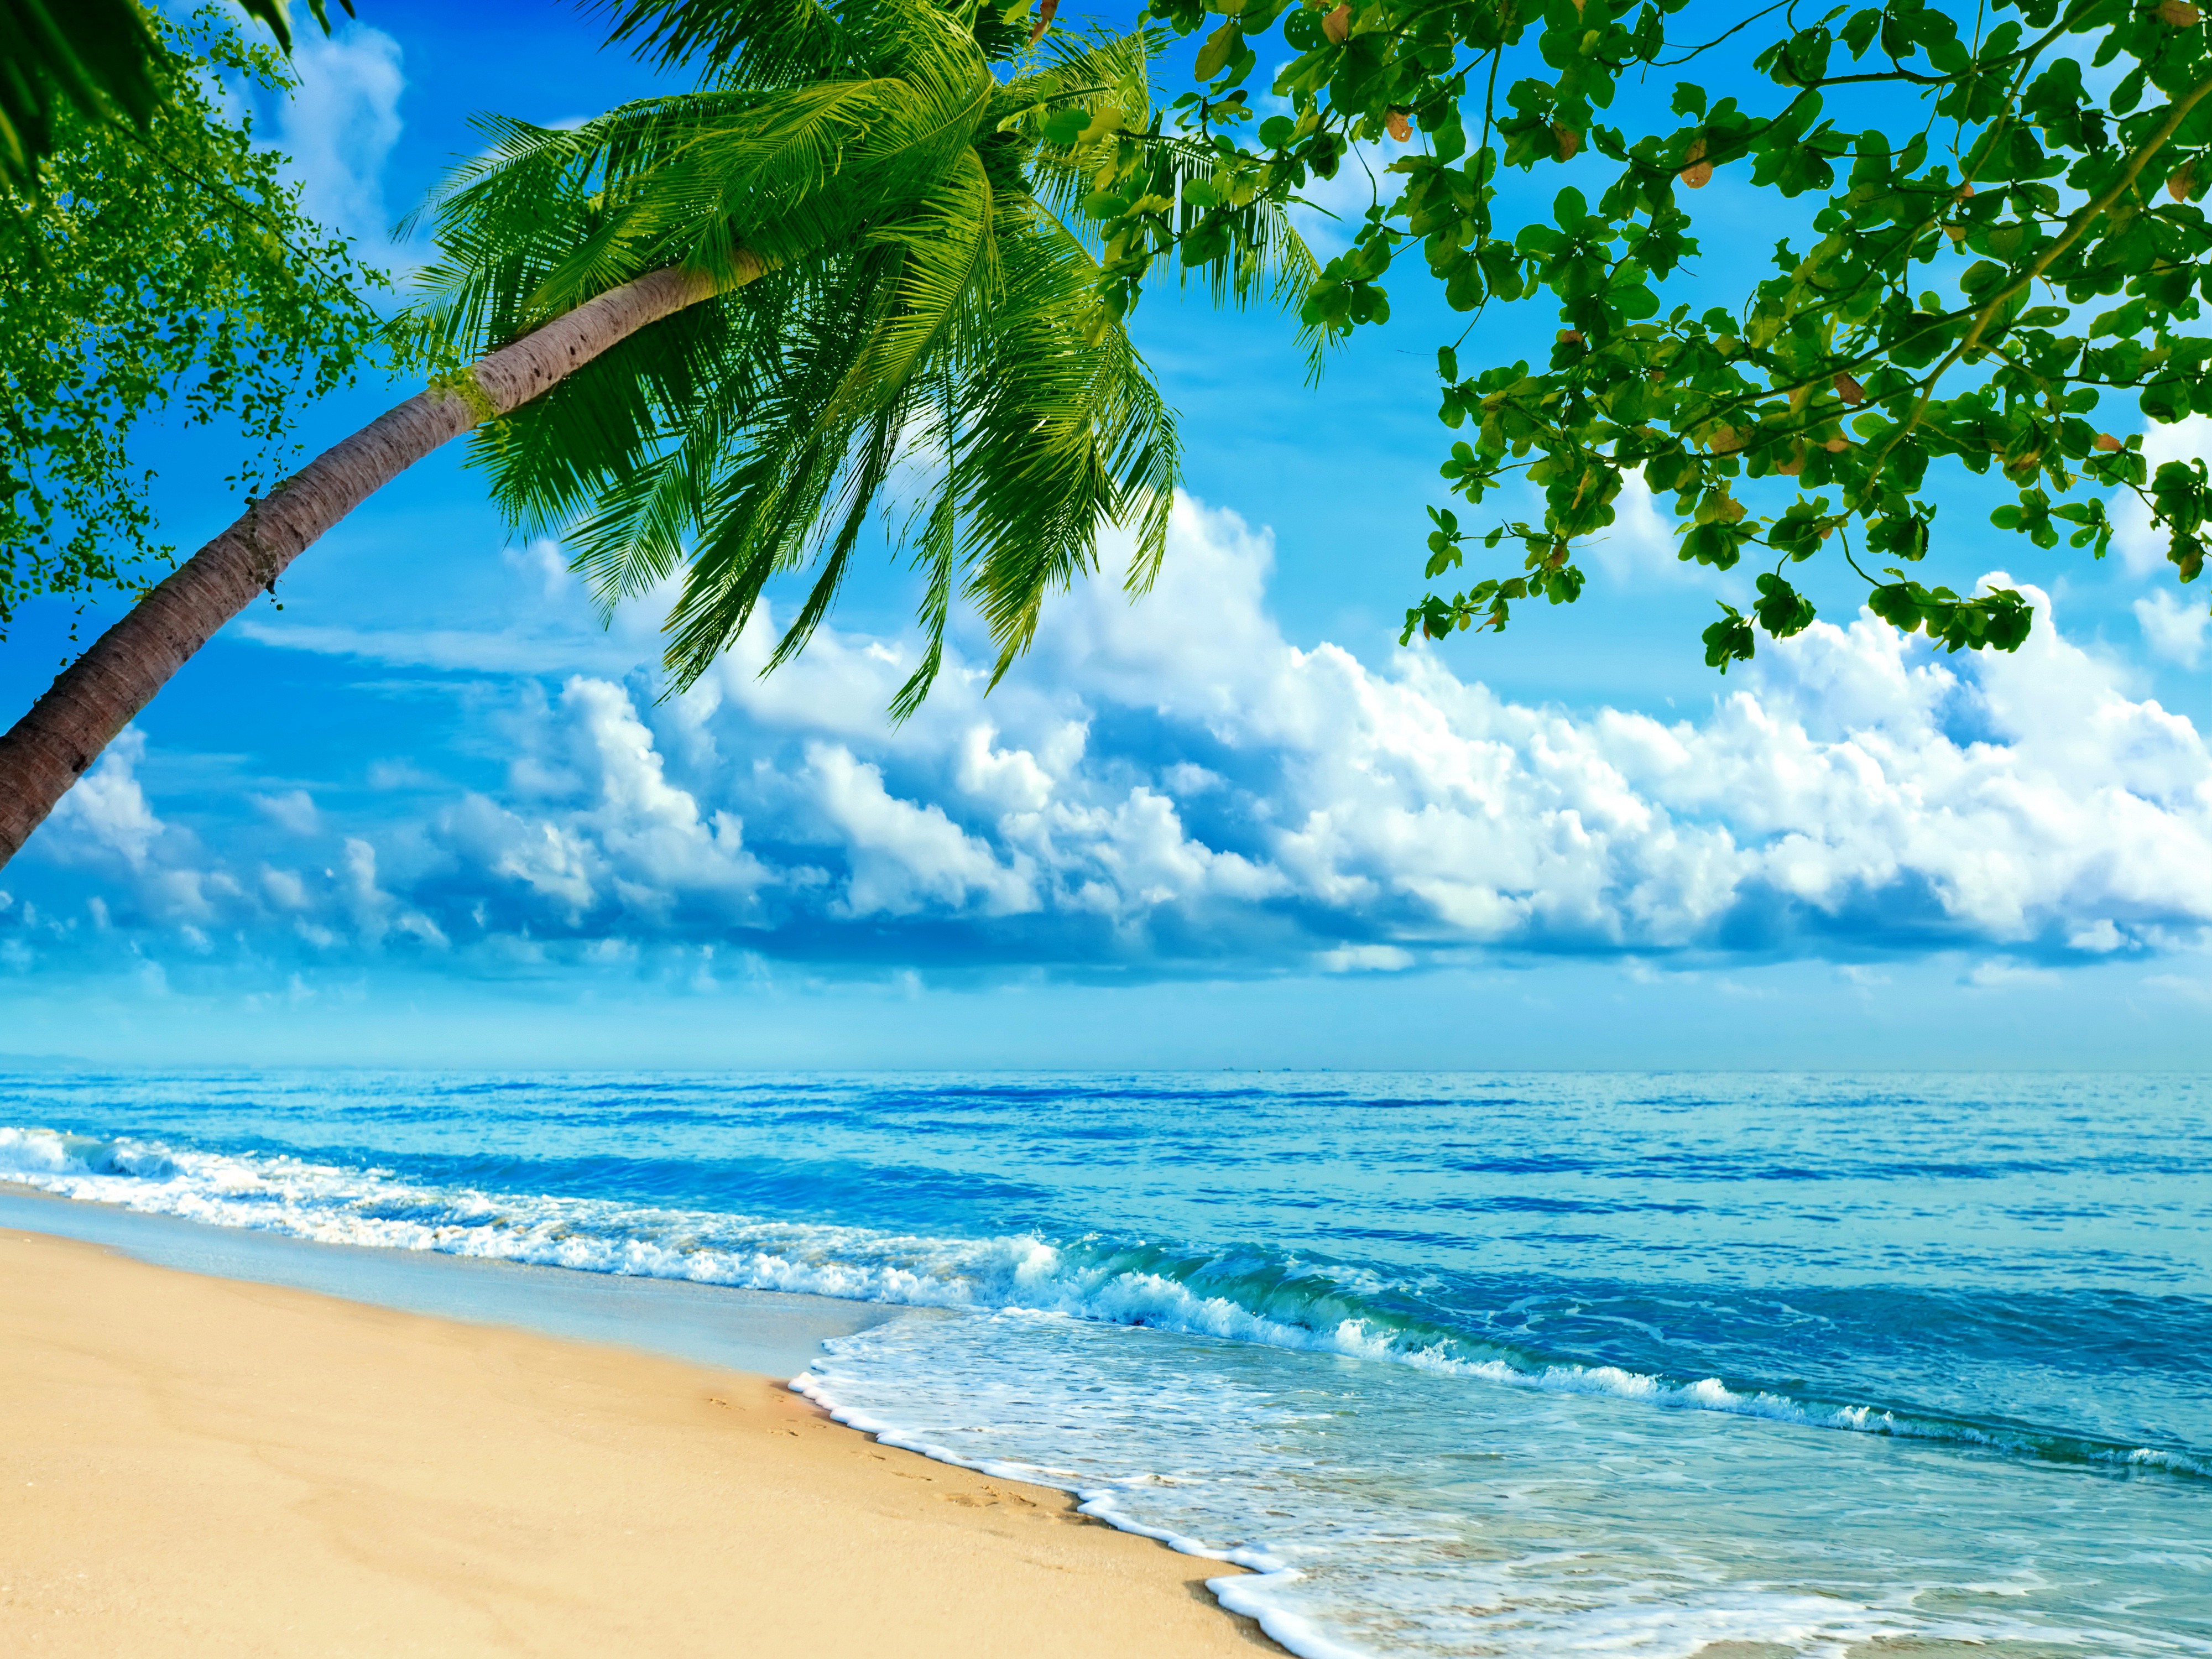 Фото пляж, пальмы в хорошем качестве